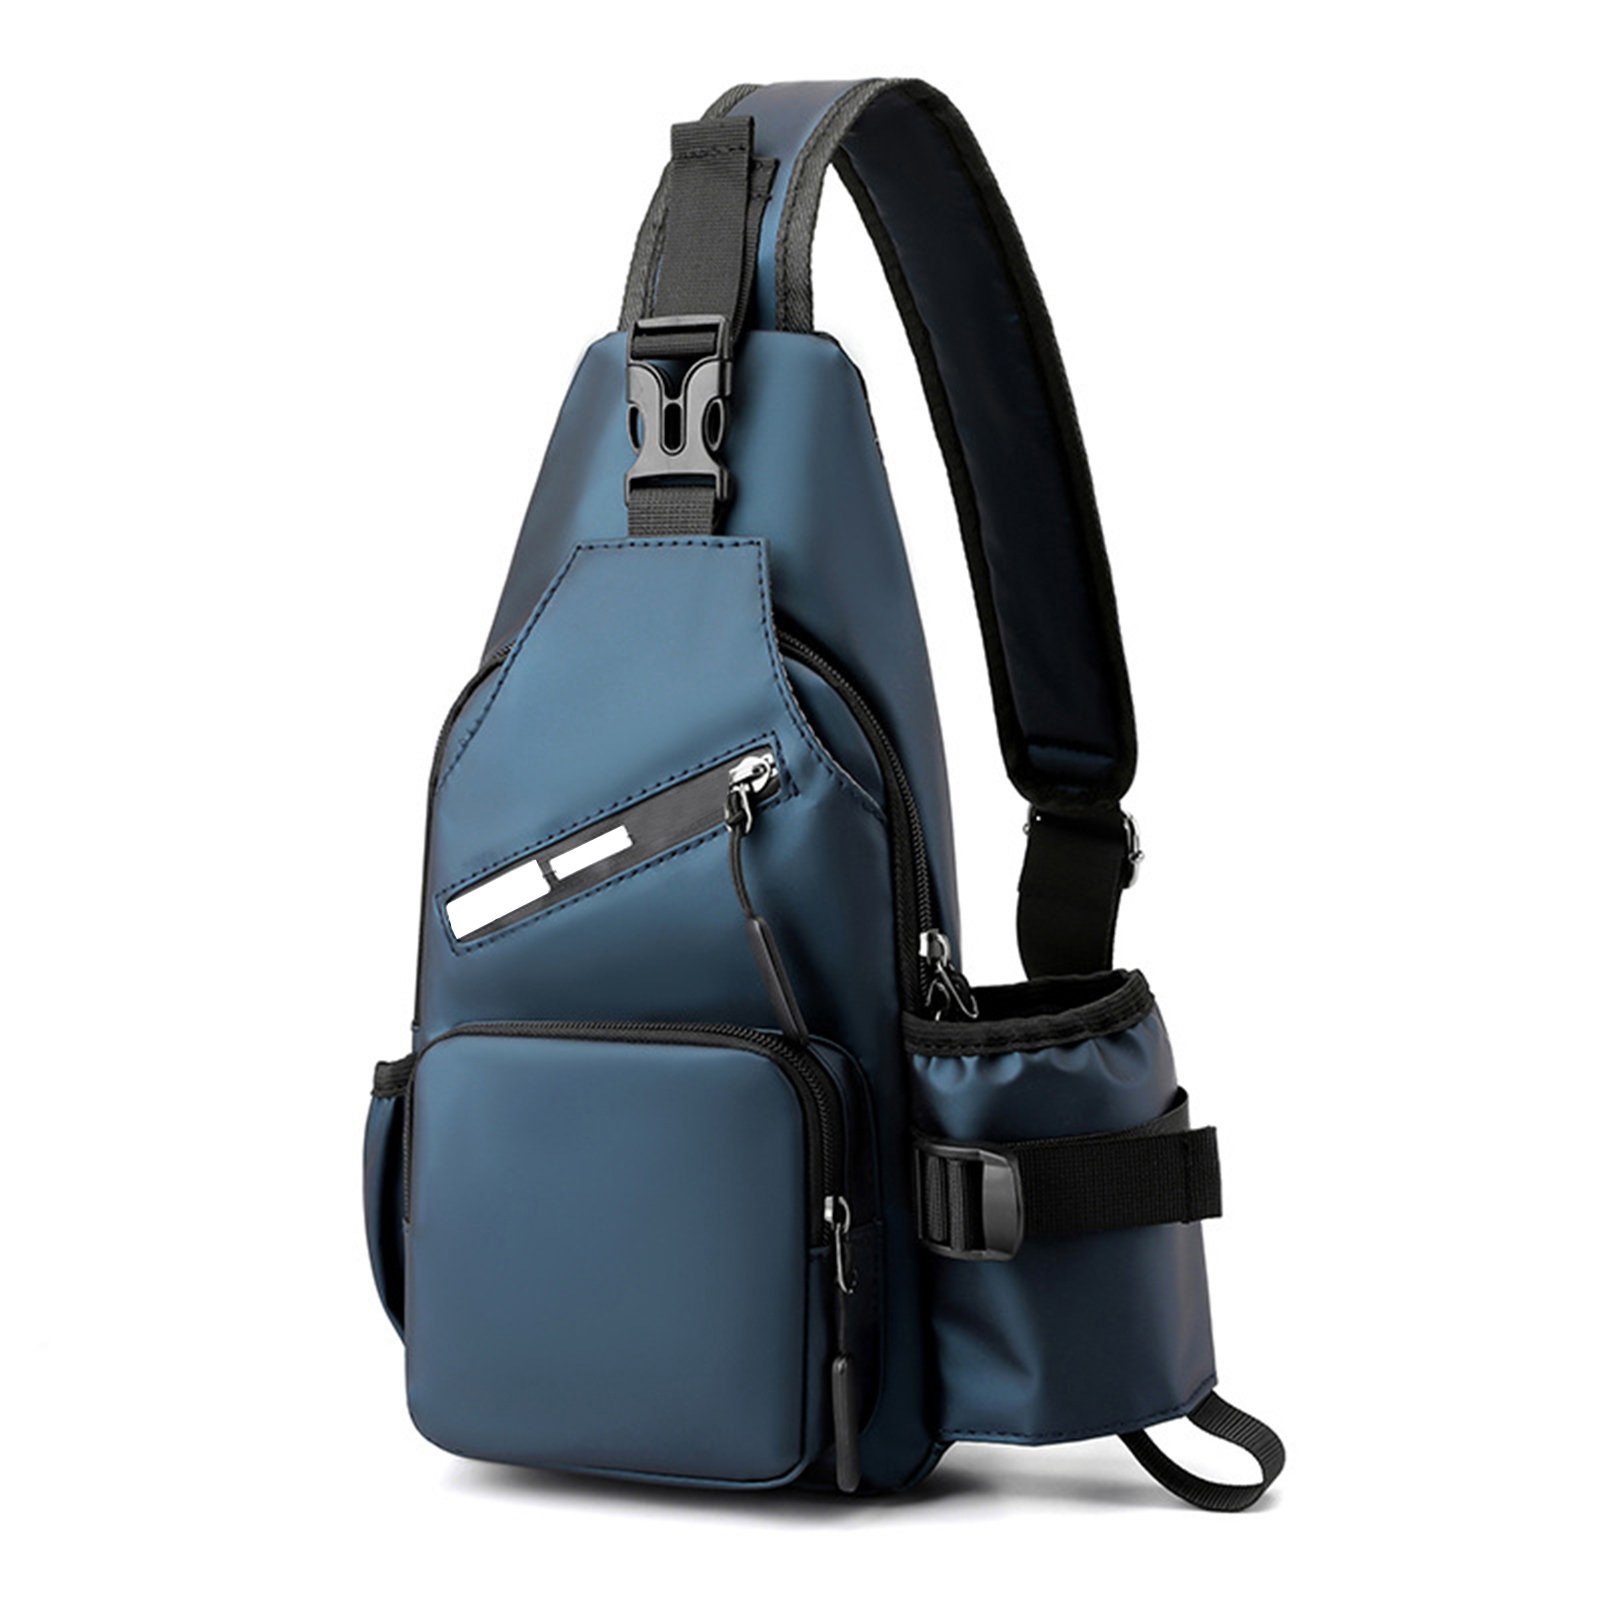 Blusmart Sporttasche Herren-Brusttasche Mit Wasserflaschentasche, Multifunktionaler blue